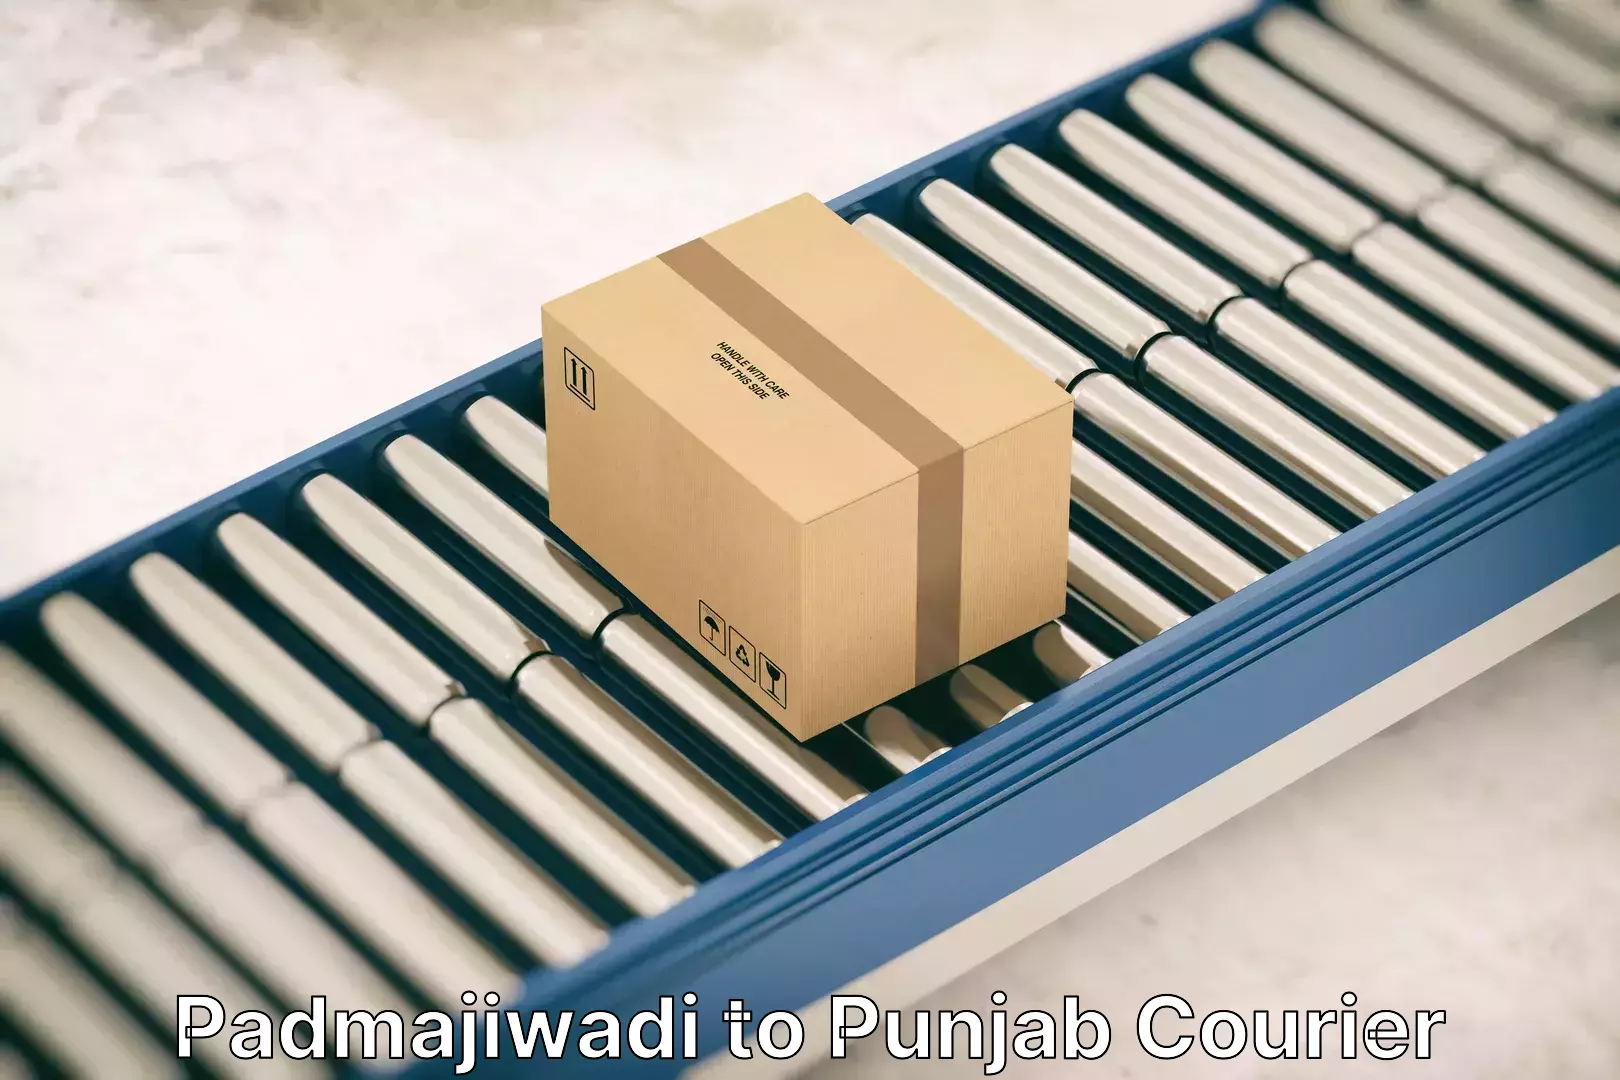 Budget-friendly moving services Padmajiwadi to Punjab